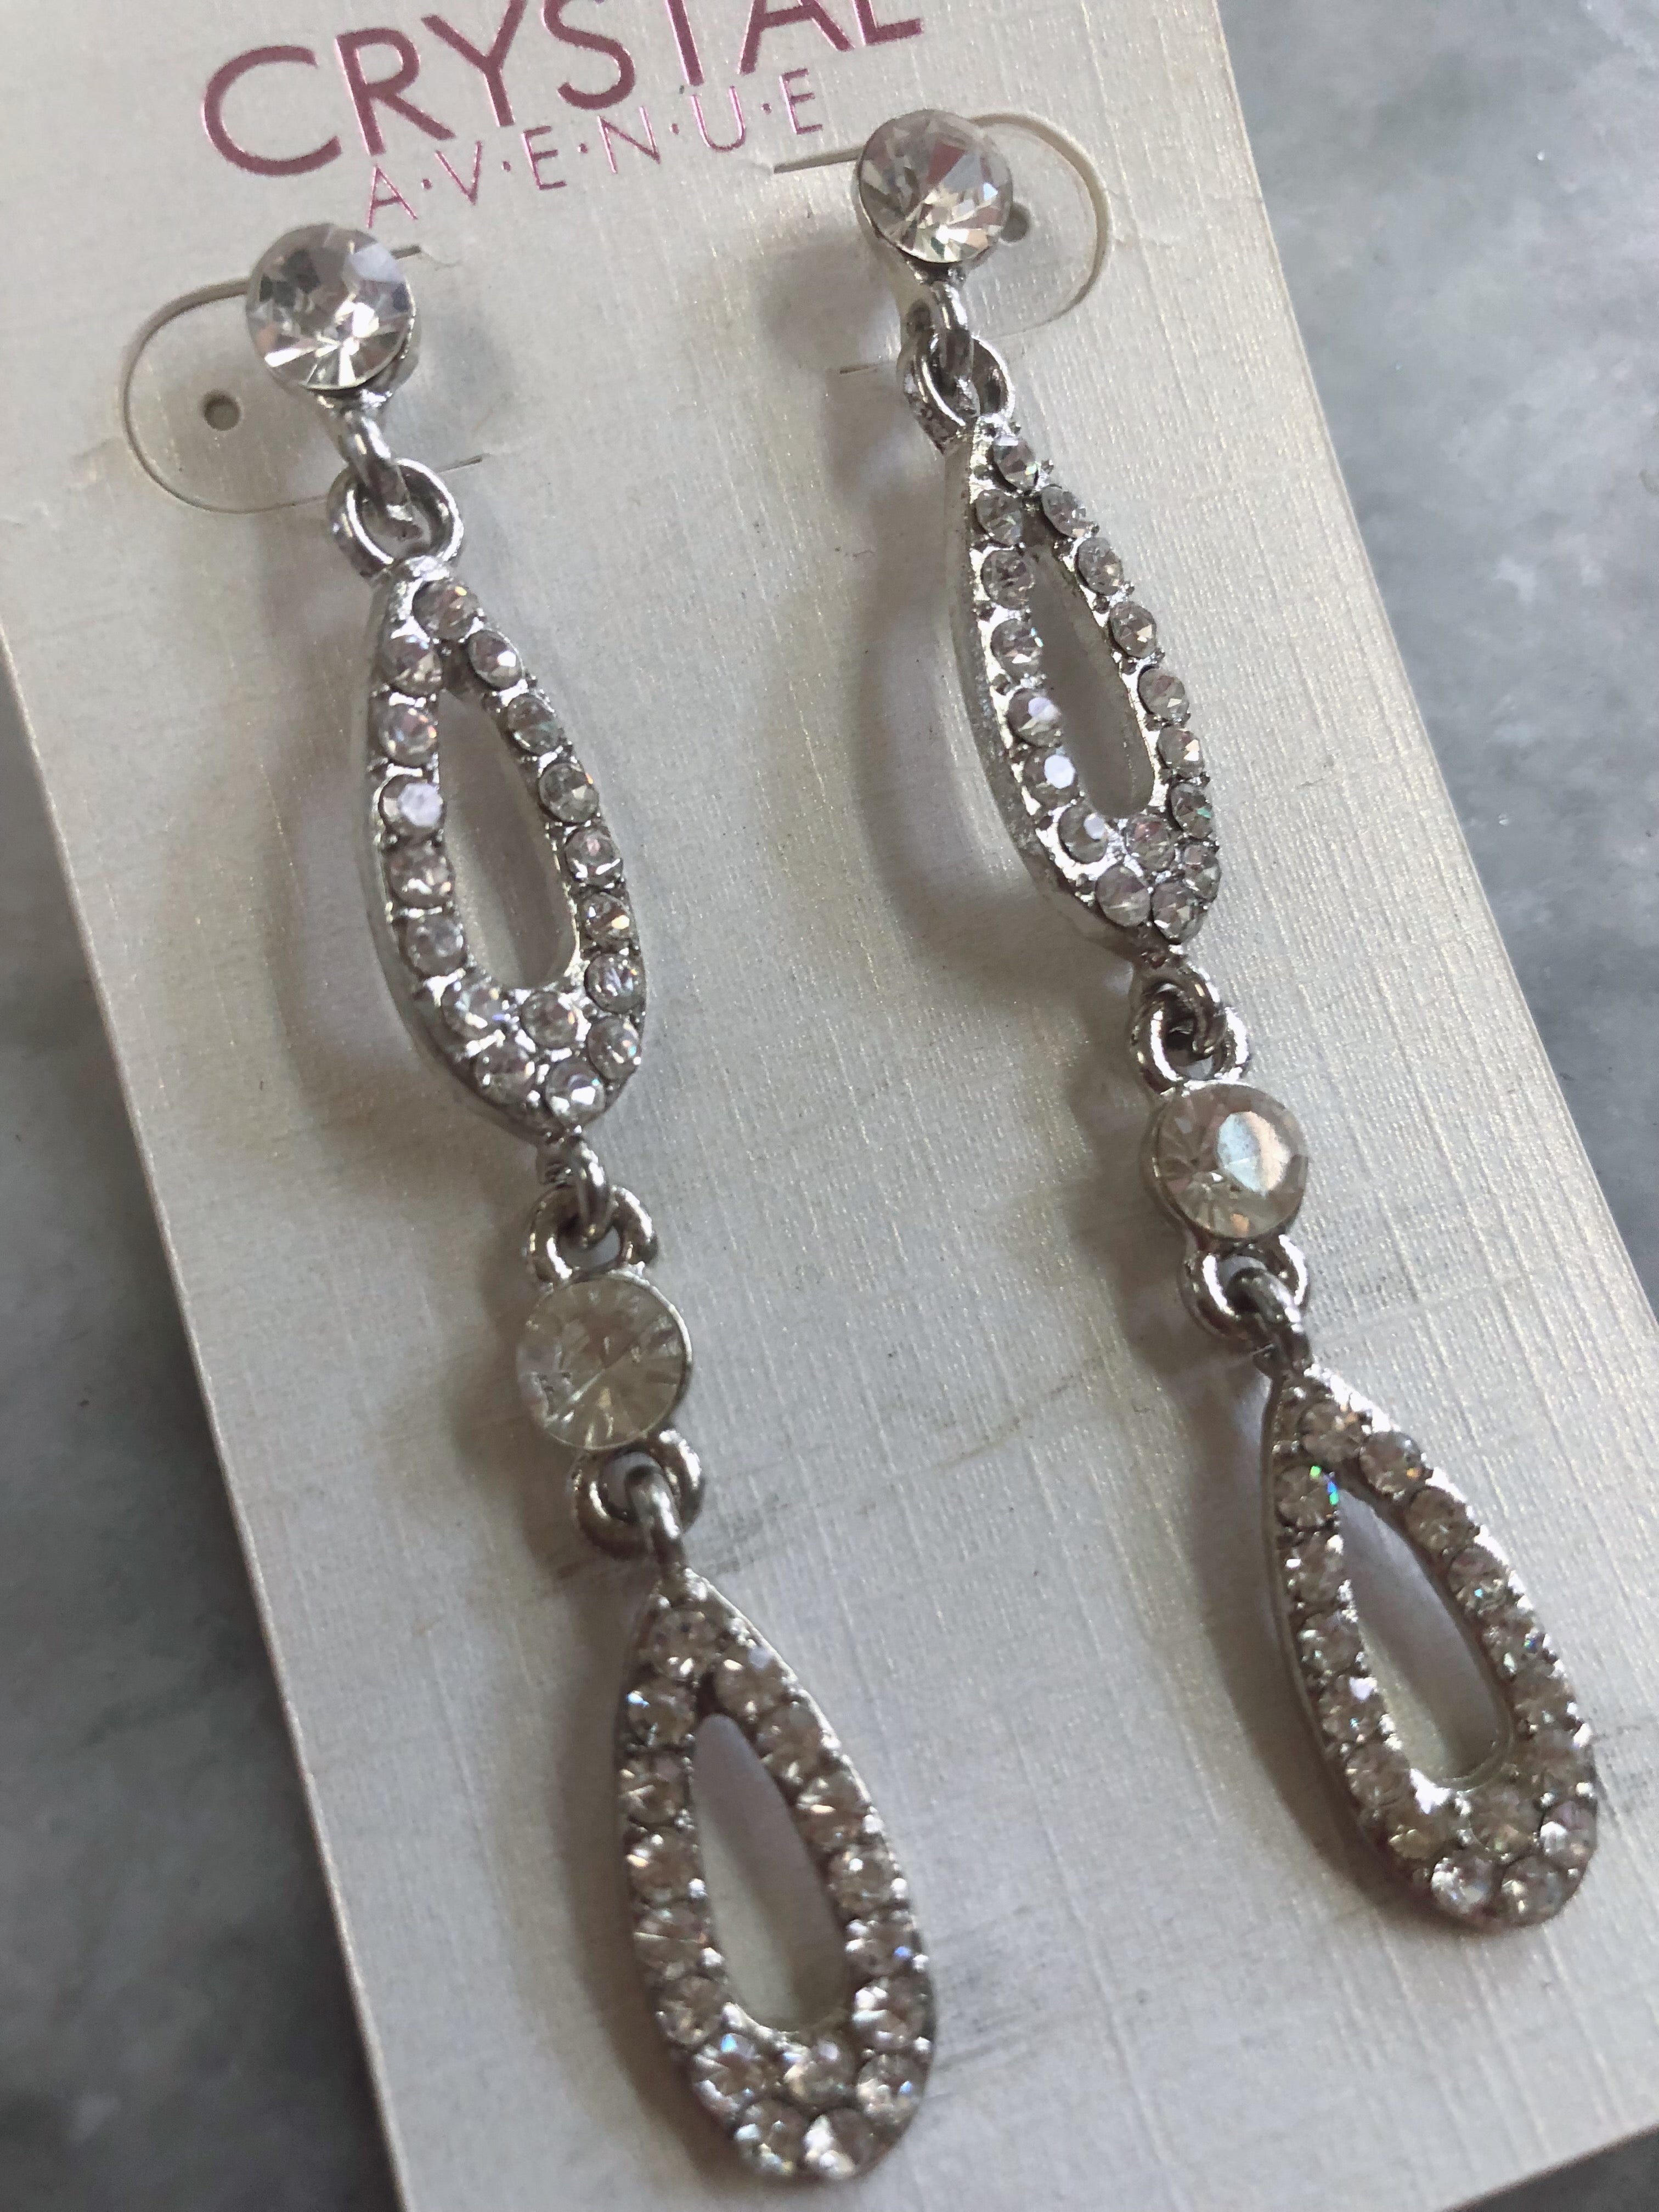 Crystal Avenue Faux Diamond Earrings